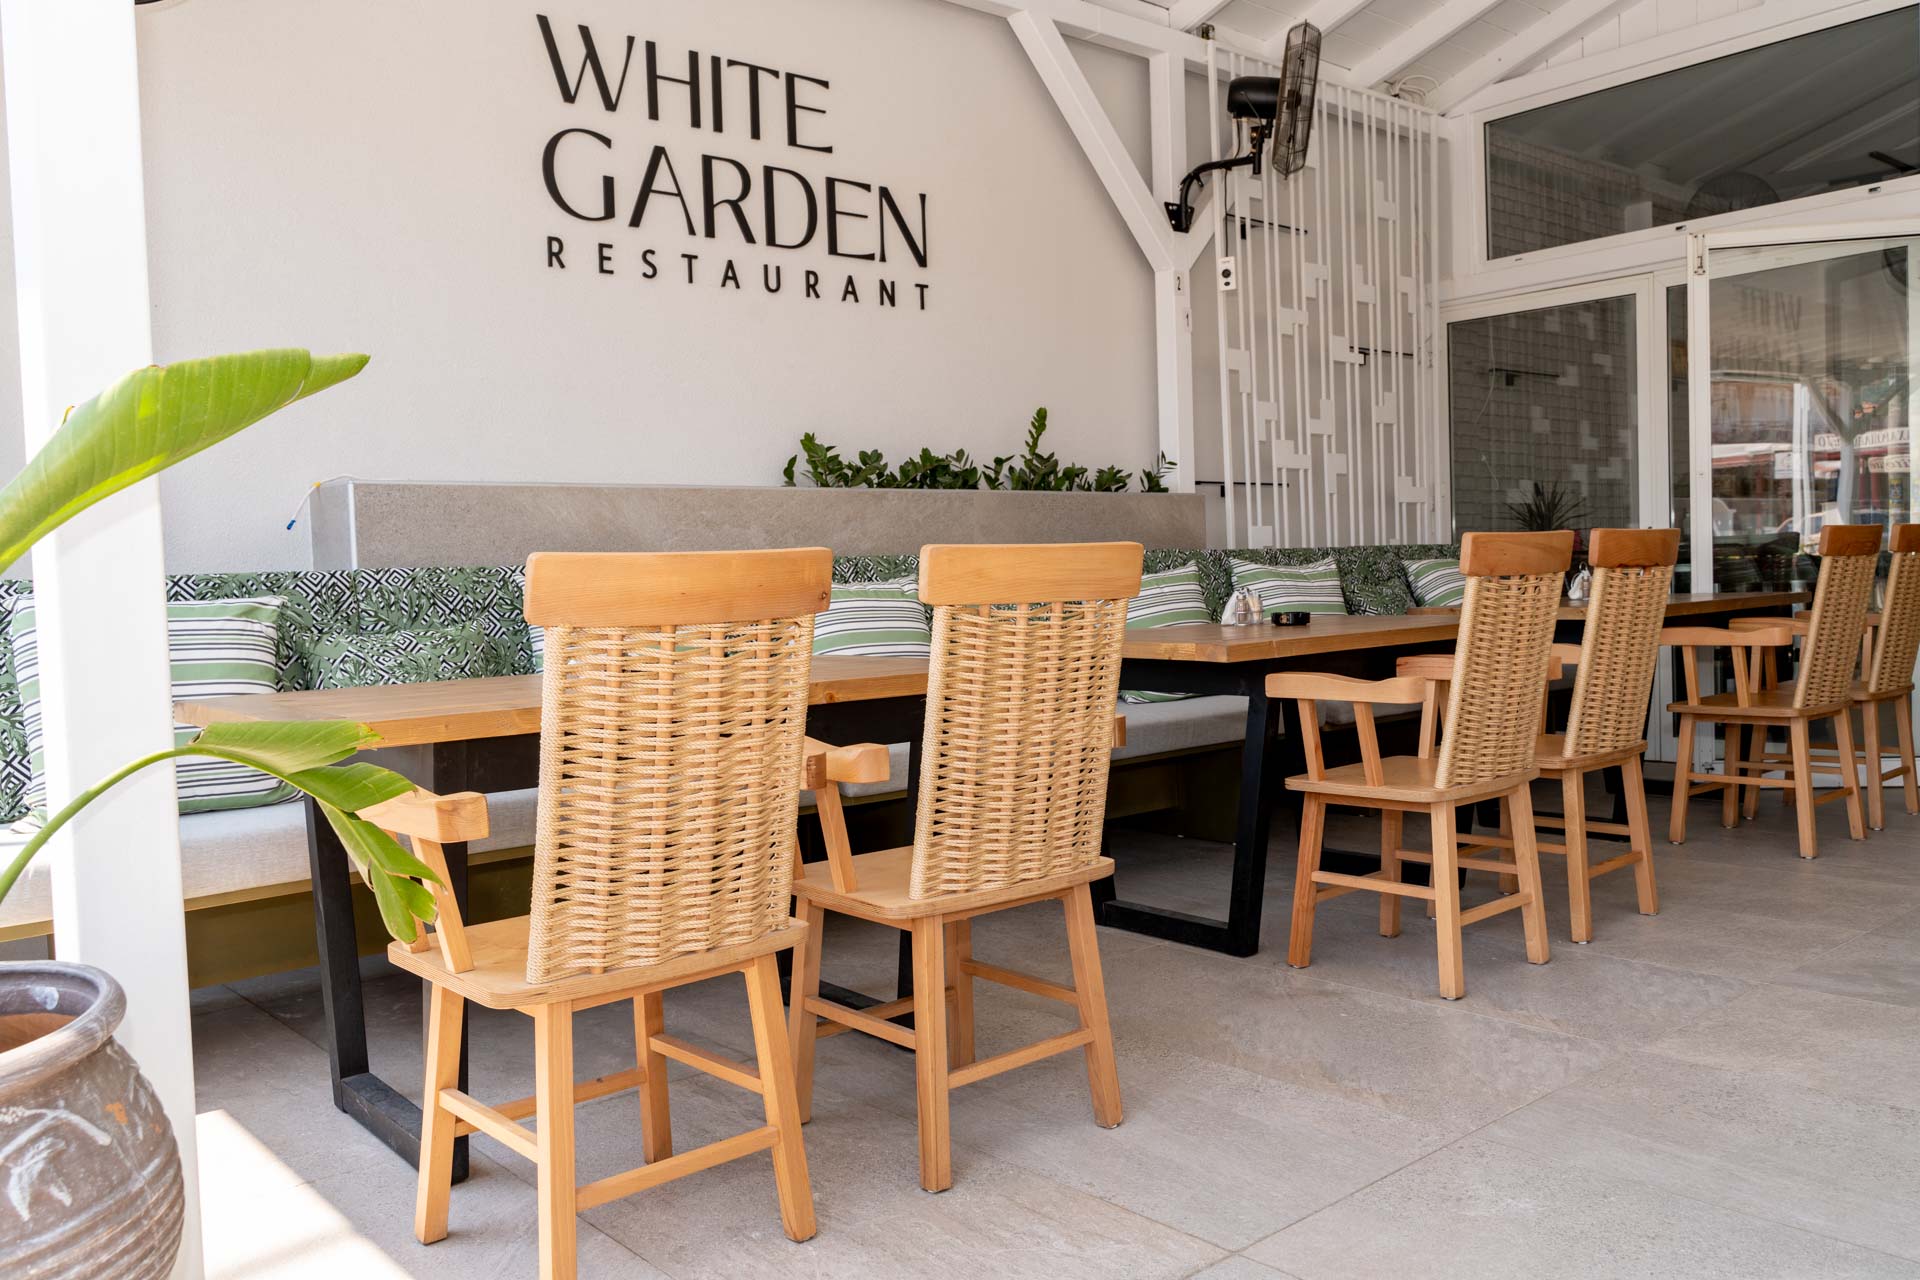 White Garden Restaurant